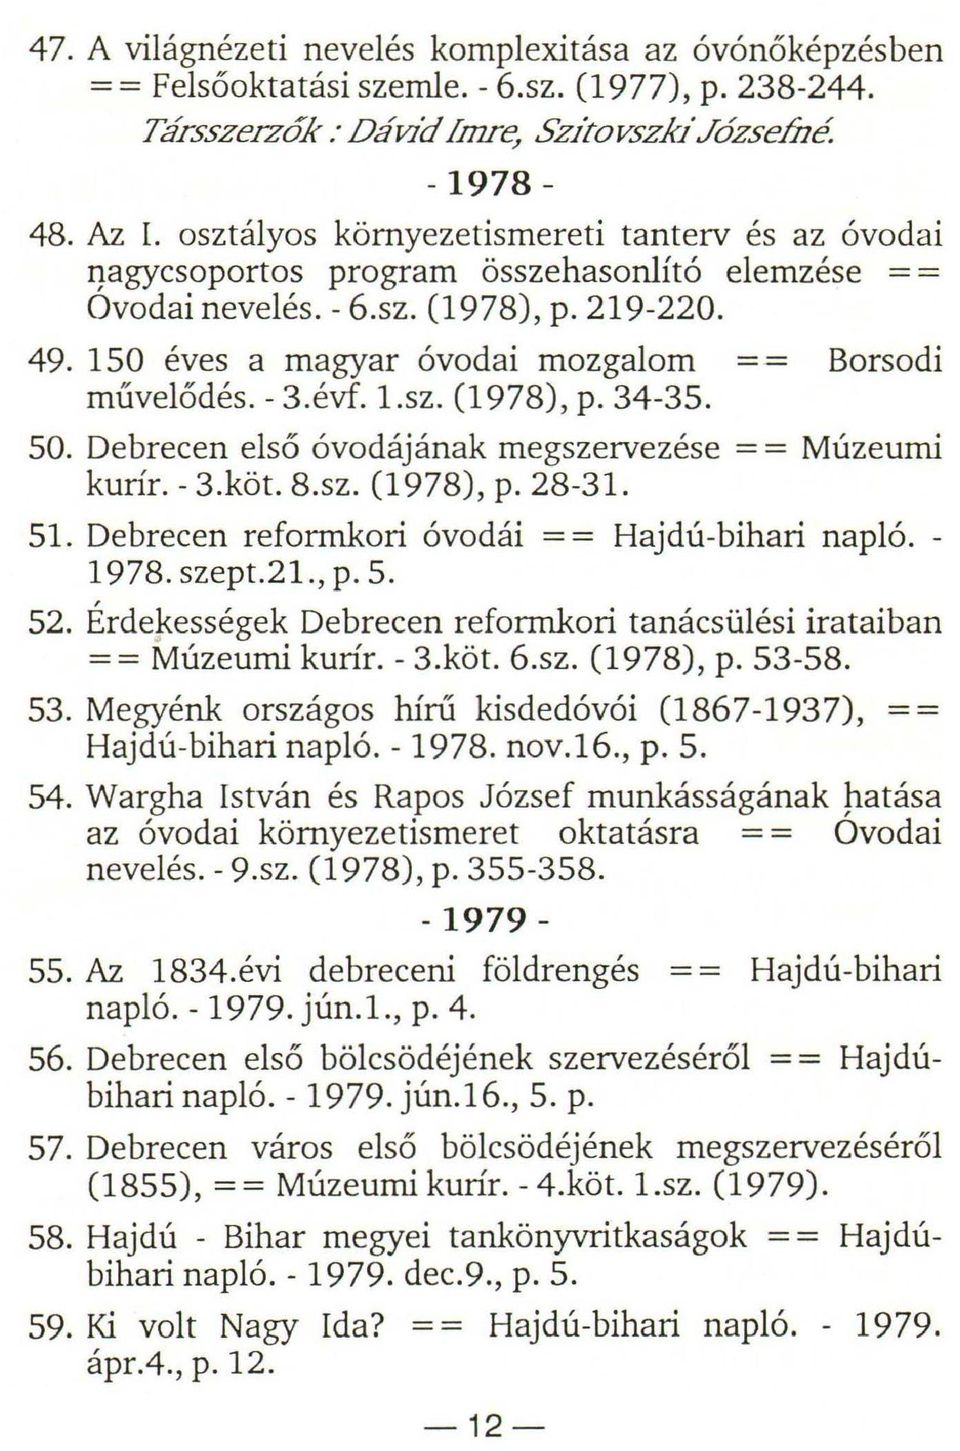 - 3.évf. l.sz. (1978), p. 34-35. 50. Debrecen első óvodájának megszervezése = = Múzeumi kurír. - 3.köt. 8.sz. (1978), p. 28-31. 51. Debrecen reformkori óvodái = = Hajdú-bihari napló. - 1978. szept.21.